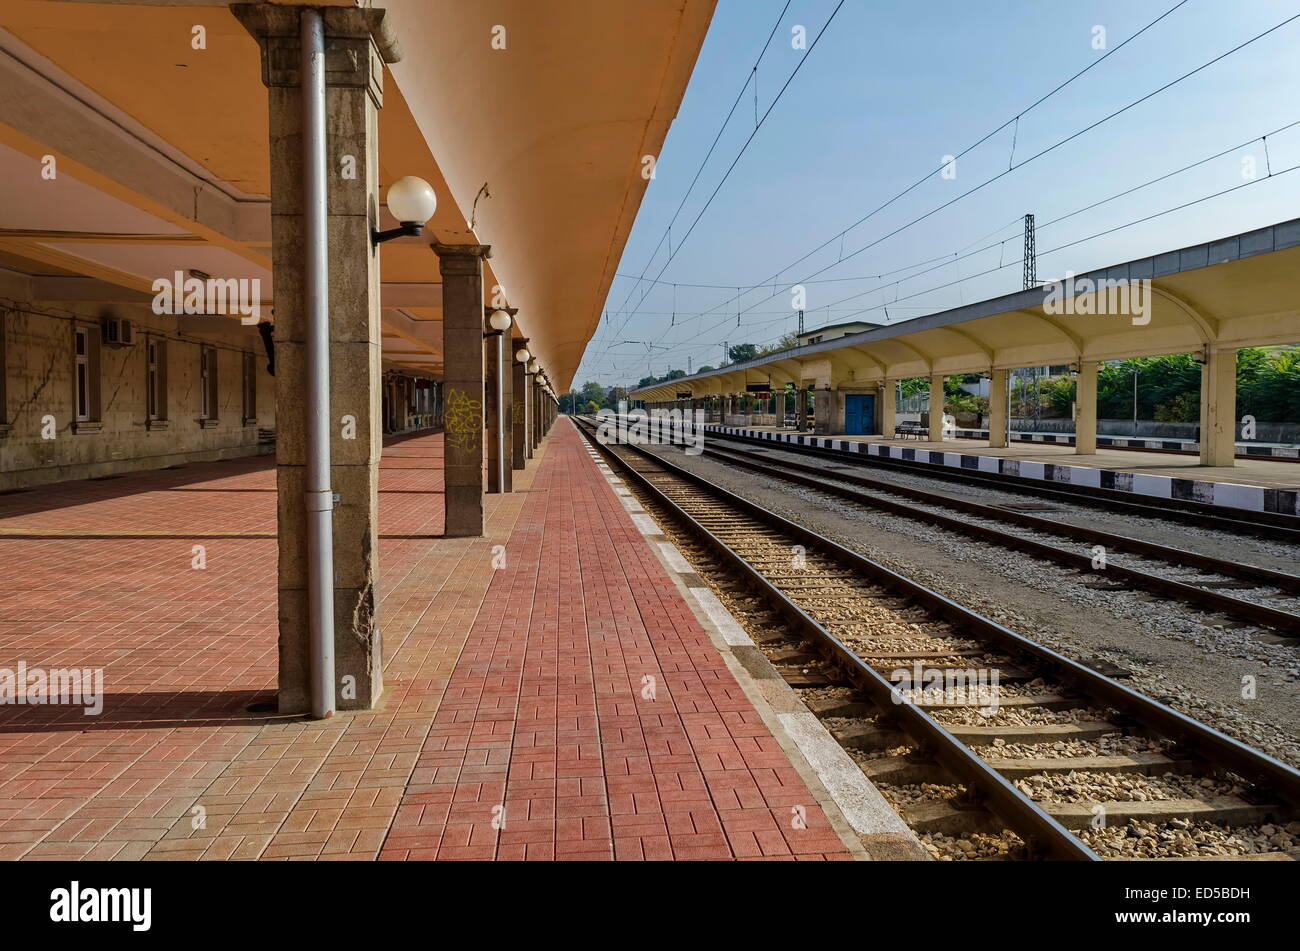 Renovierung von alten Bahnhof der Eisenbahn und Blick in die Plattform für Eingang und Ausgang der Vorortbahn Ruse, Bulgarien Stockfoto